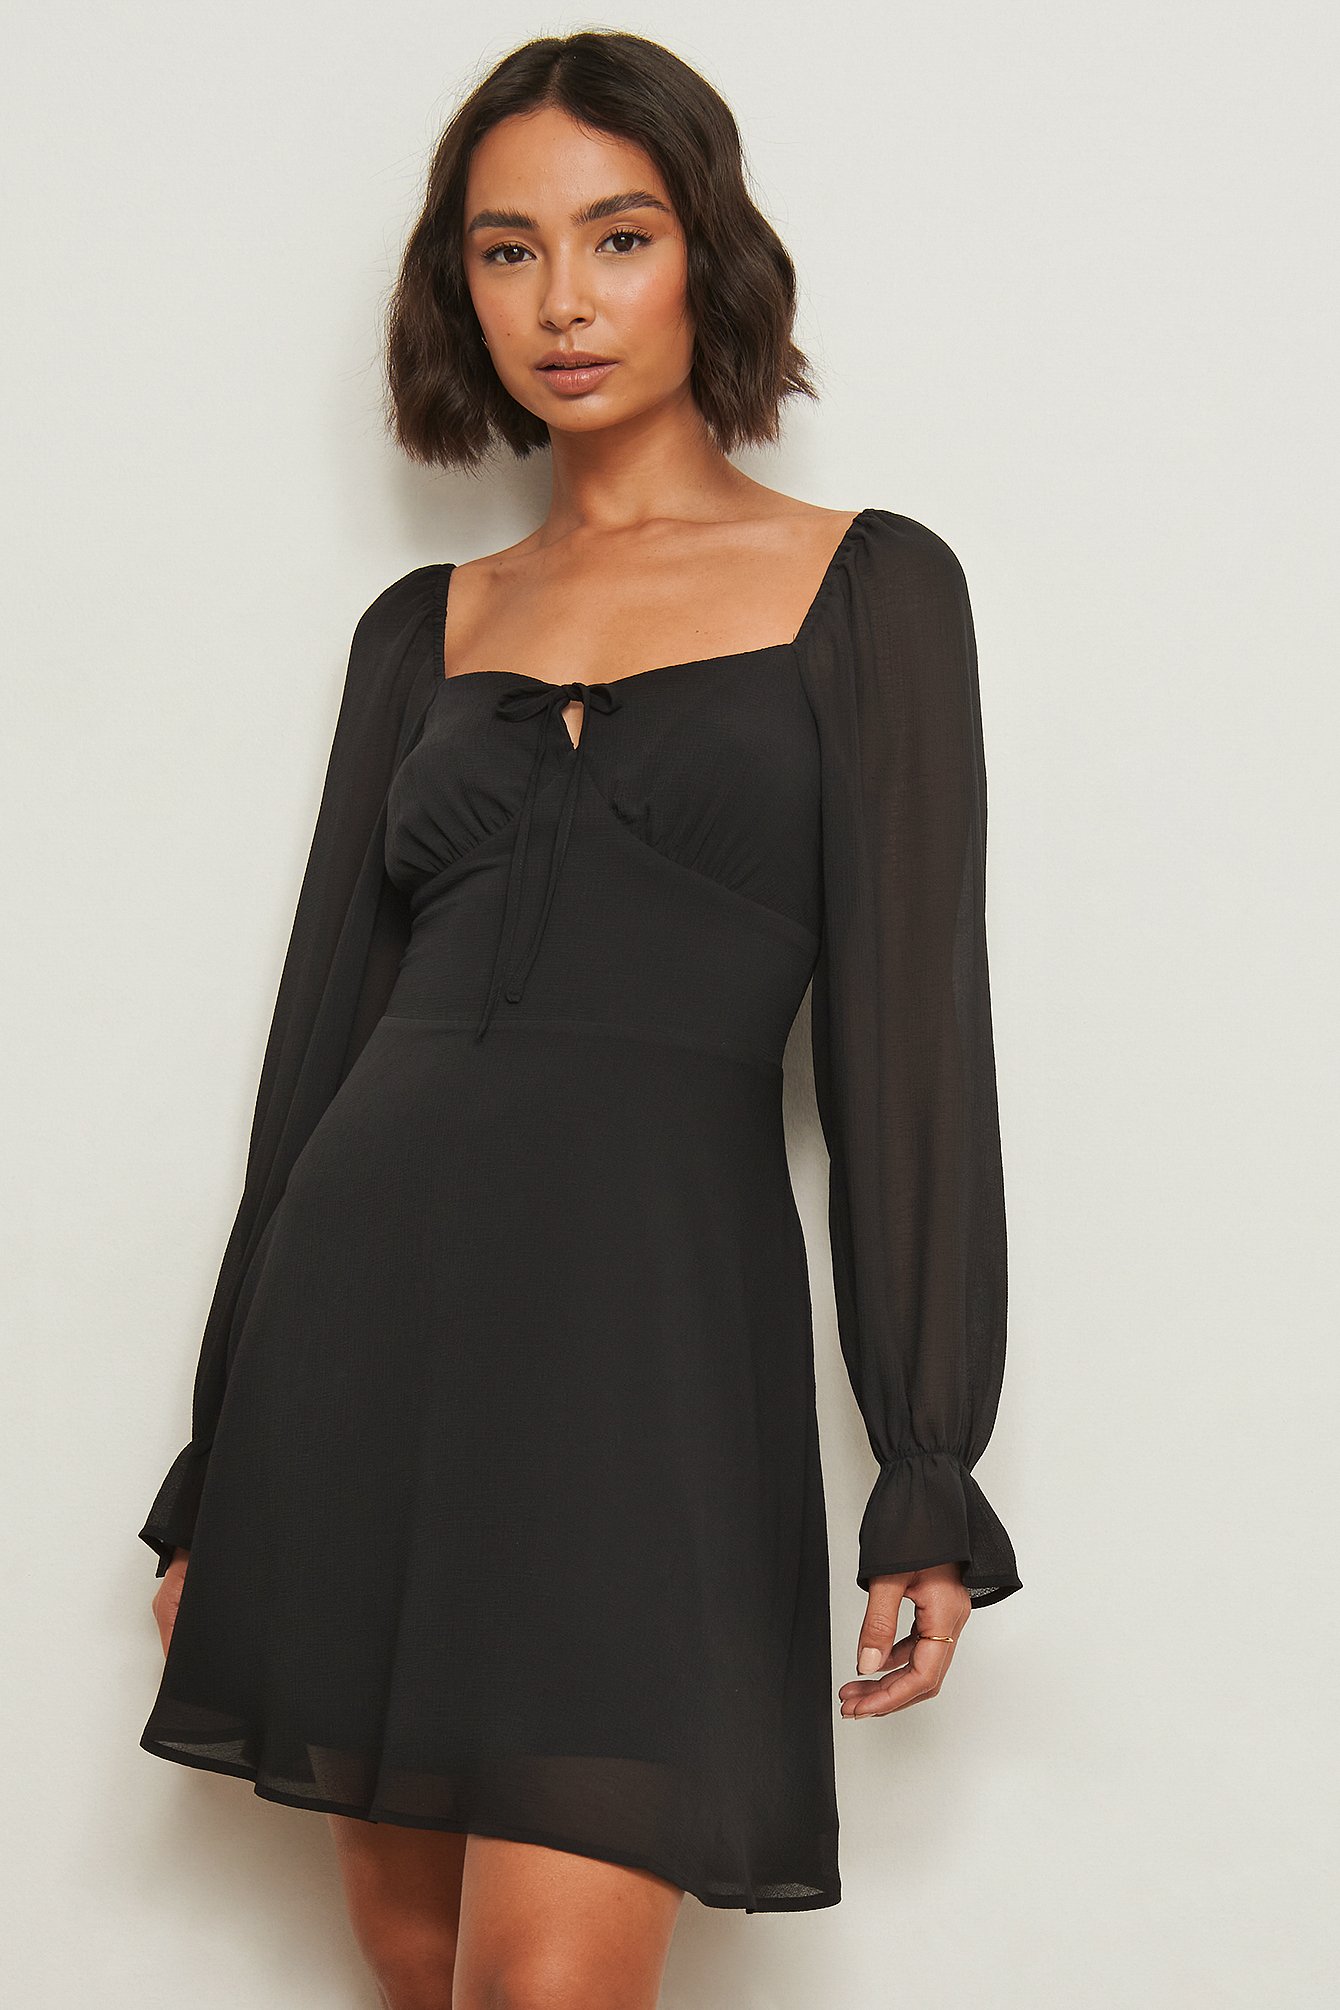 Black Resirkulert kjole med lange ermer og detaljer